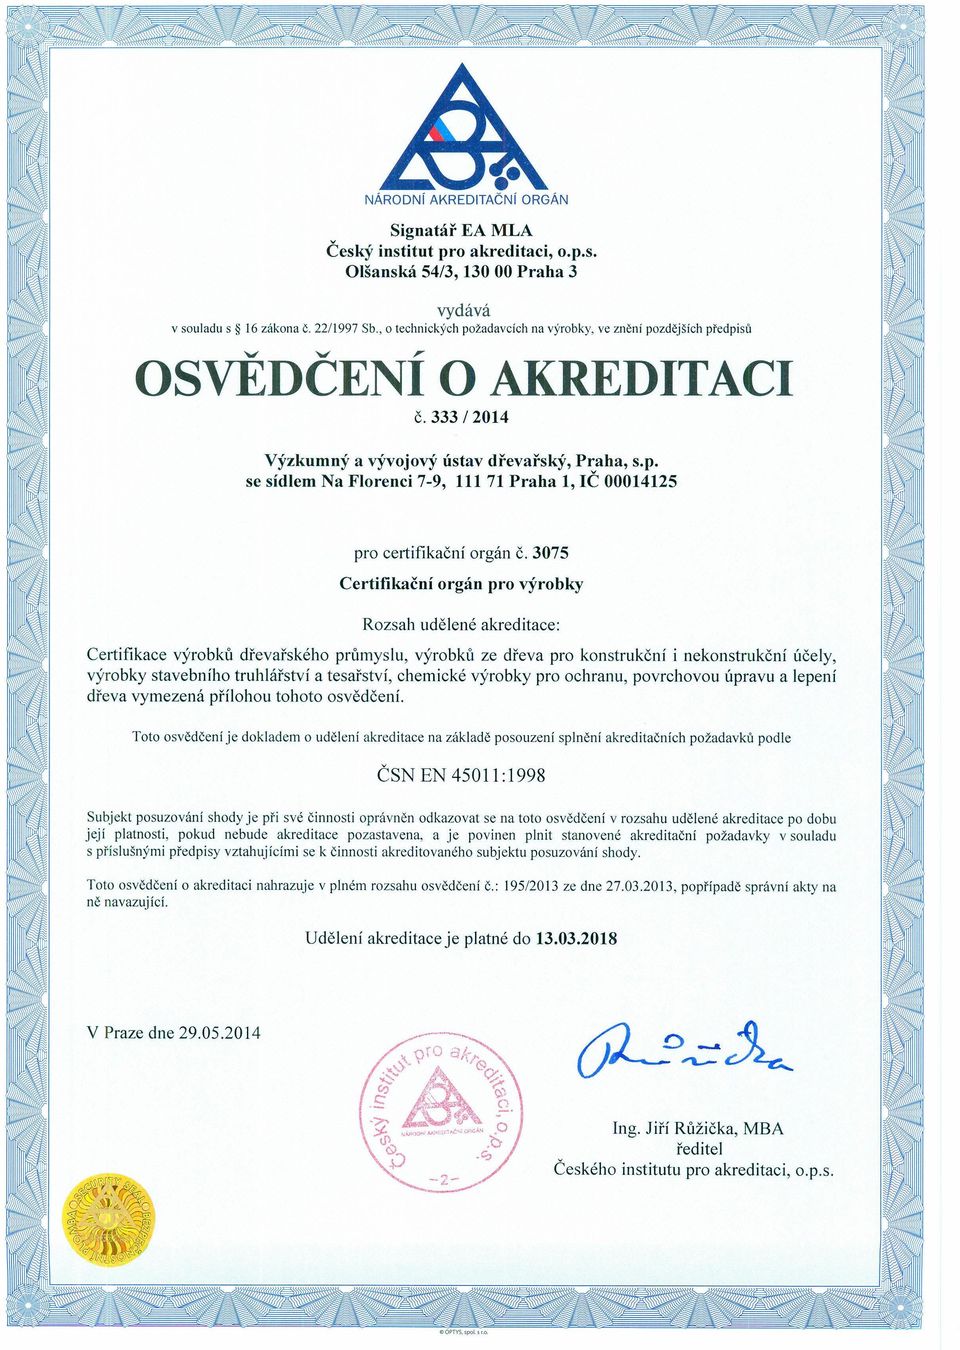 3075 Rozsah udělené akreditace: Certifikace výrobků dřevařského průmyslu, výrobků ze dřeva pro konstrukční i nekonstrukční účely, výrobky stavebního truhlářství a tesařství, chemické výrobky pro